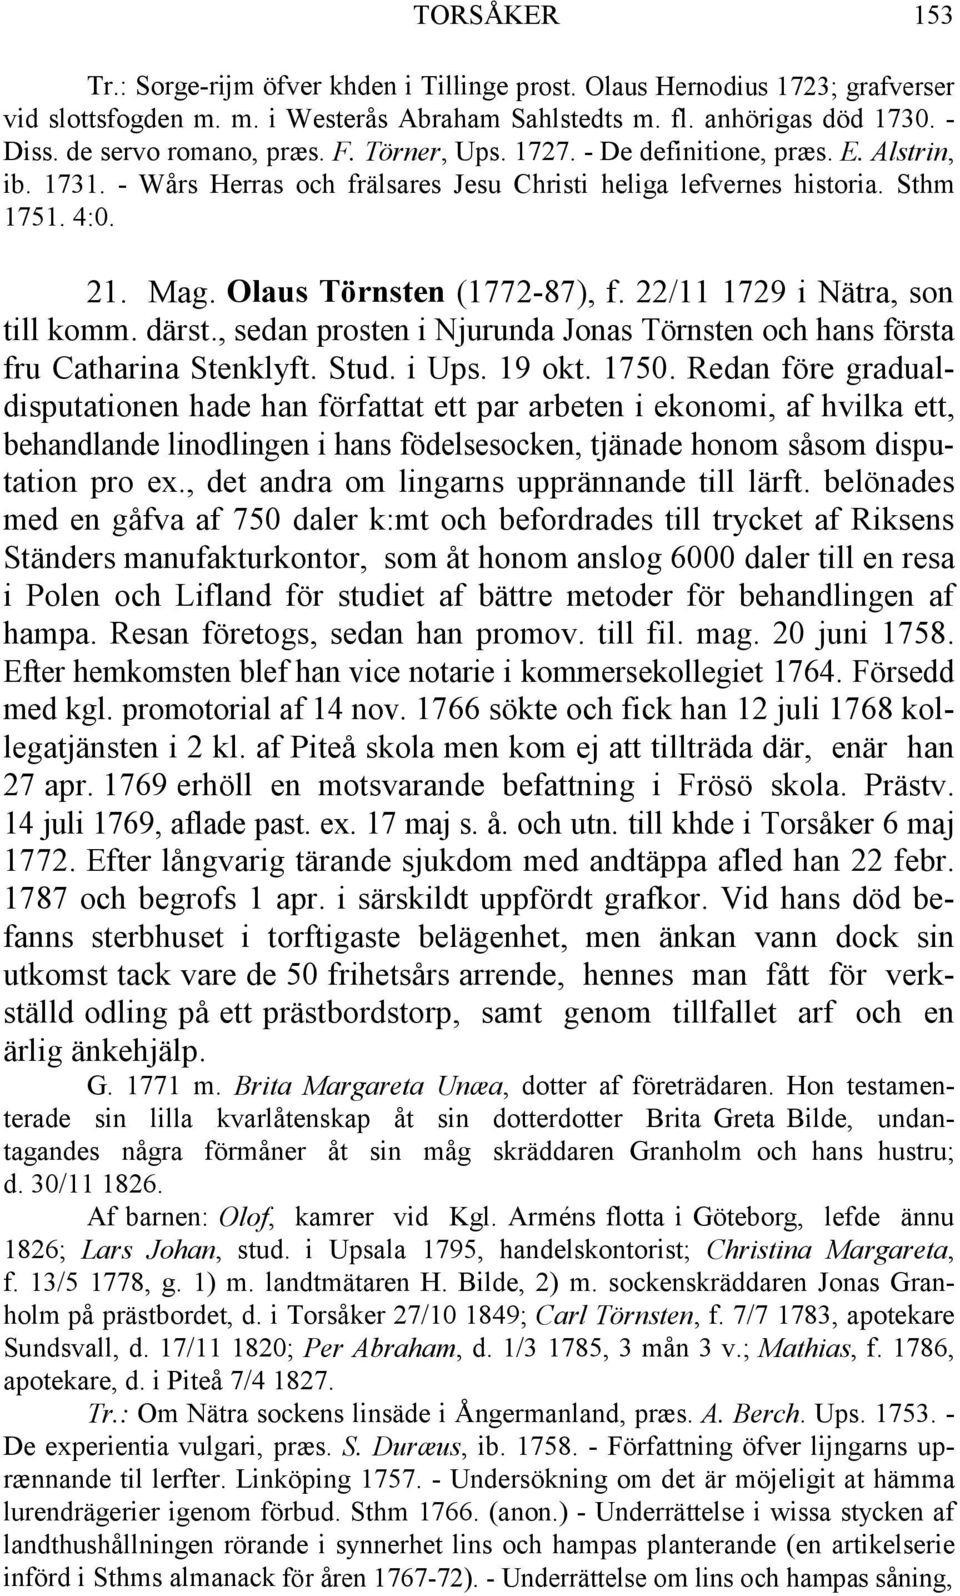 Olaus Törnsten (1772-87), f. 22/11 1729 i Nätra, son till komm. därst., sedan prosten i Njurunda Jonas Törnsten och hans första fru Catharina Stenklyft. Stud. i Ups. 19 okt. 1750.